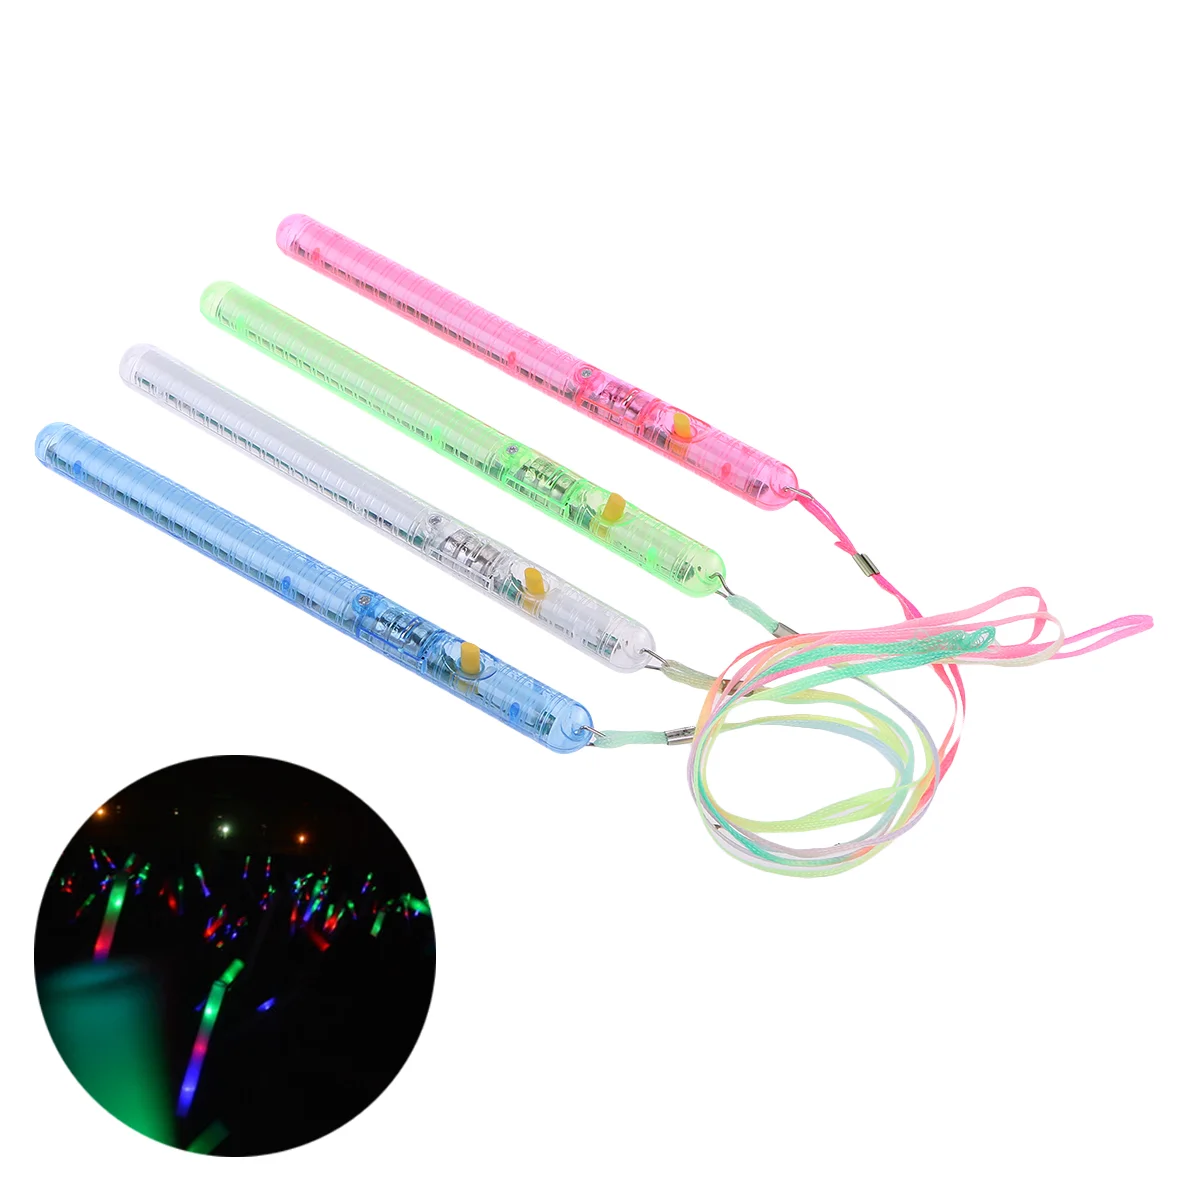 

12 Pcs Glow Sticks Concert Fluorescent Light Children LED Electronic Multi Colour